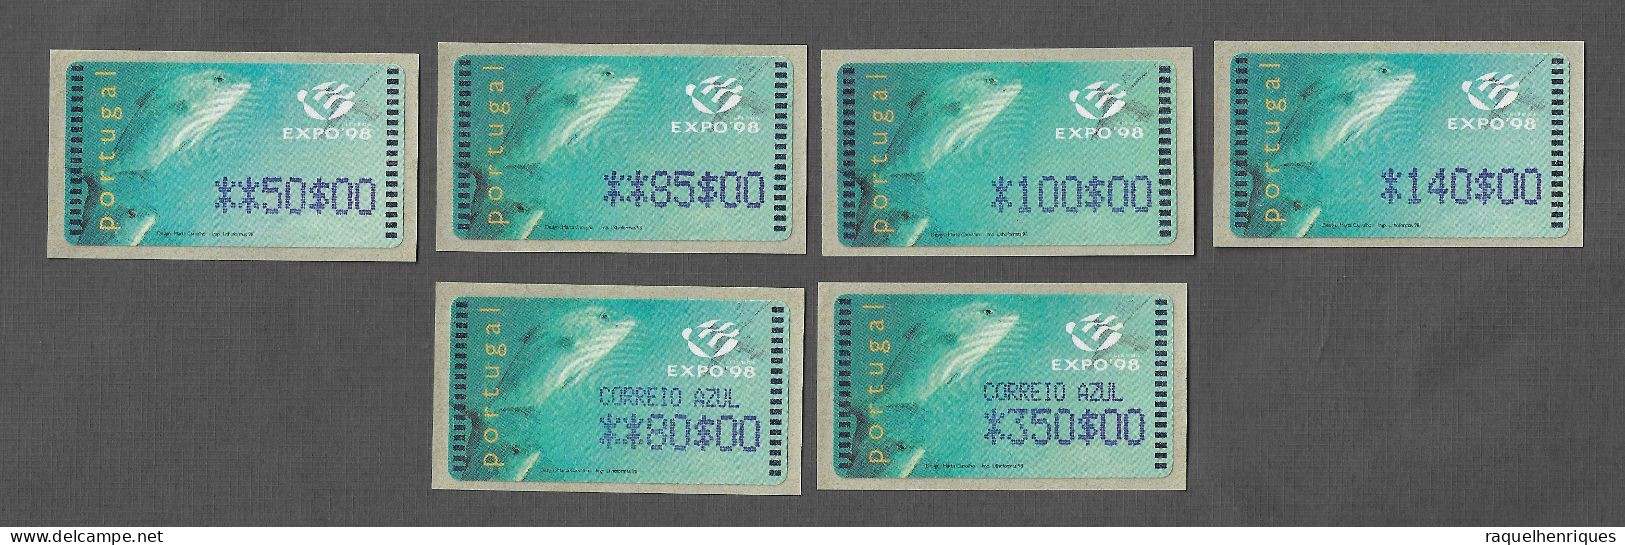 PORTUGAL ATM MACHINE STAMPS - ETIQUETAS - 1998 Expo'98 SET + CORREIO AZUL Nº16A MNH (BA5#434) - Frankeermachines (EMA)